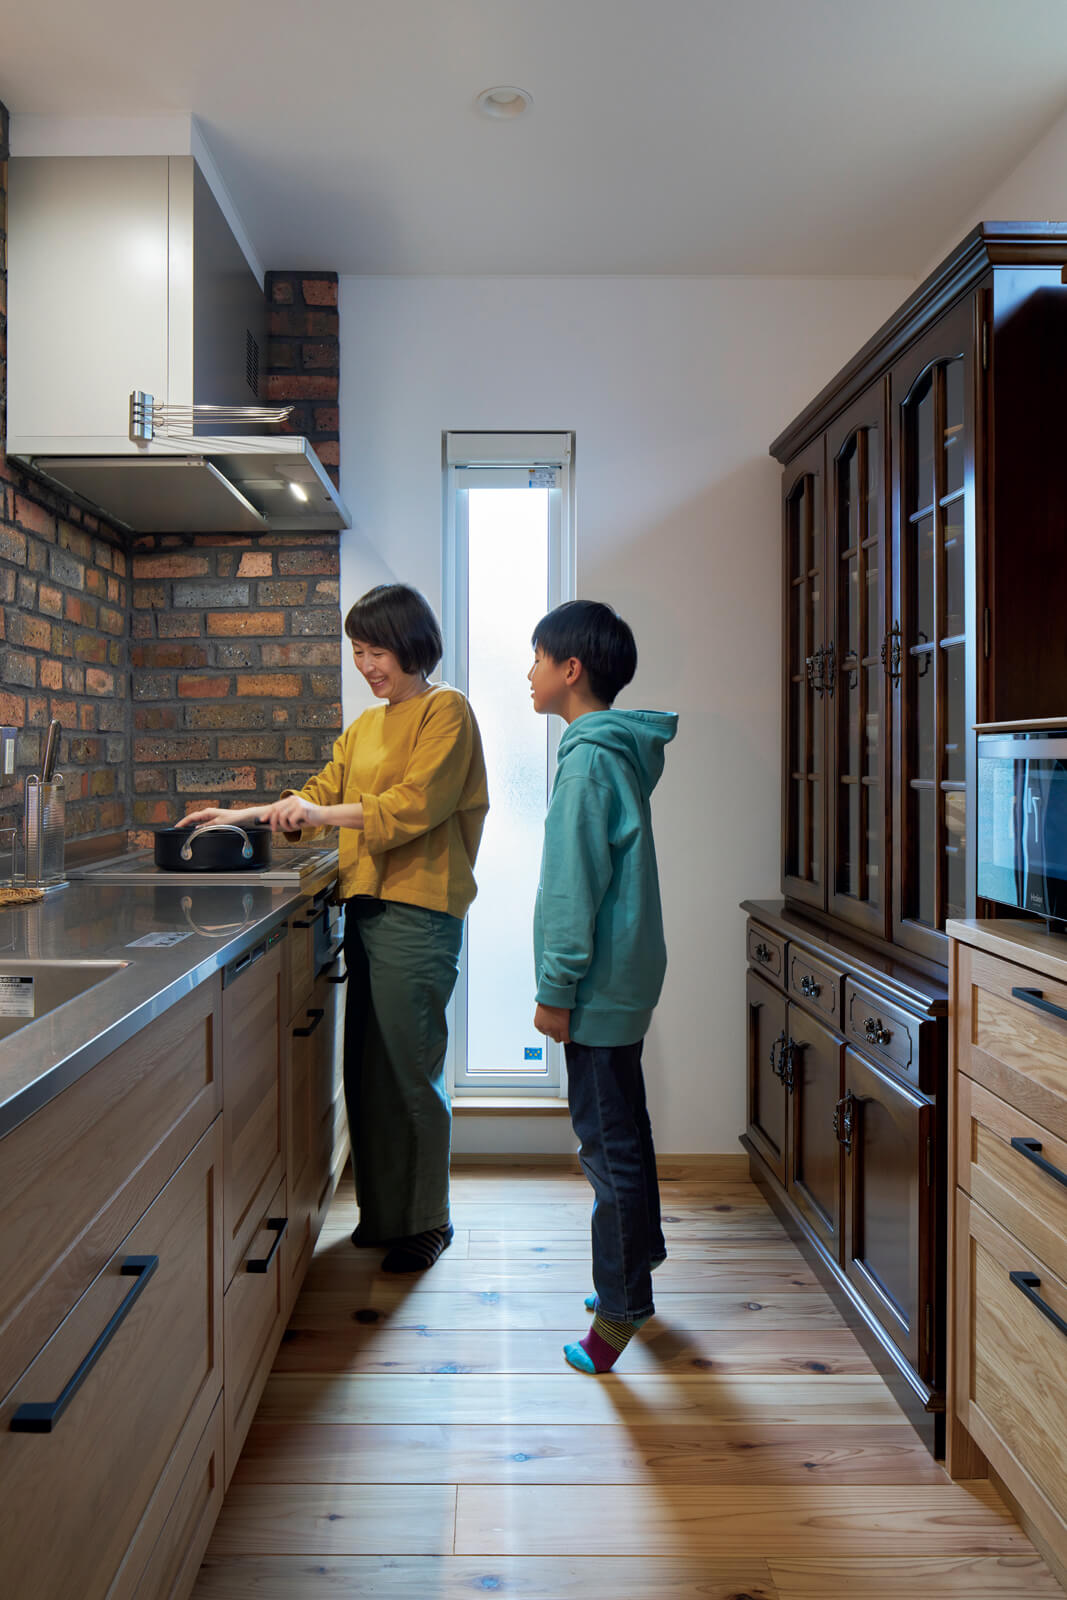 システムキッチンの面材はオーク。IHクッキングヒーターや食洗機の導入で家事の効率も上がり、フルタイムで働く奥さんの負担が少し減ったとか。何より子どもたちと同じ空間で作業できるようになったのが嬉しい変化だそう